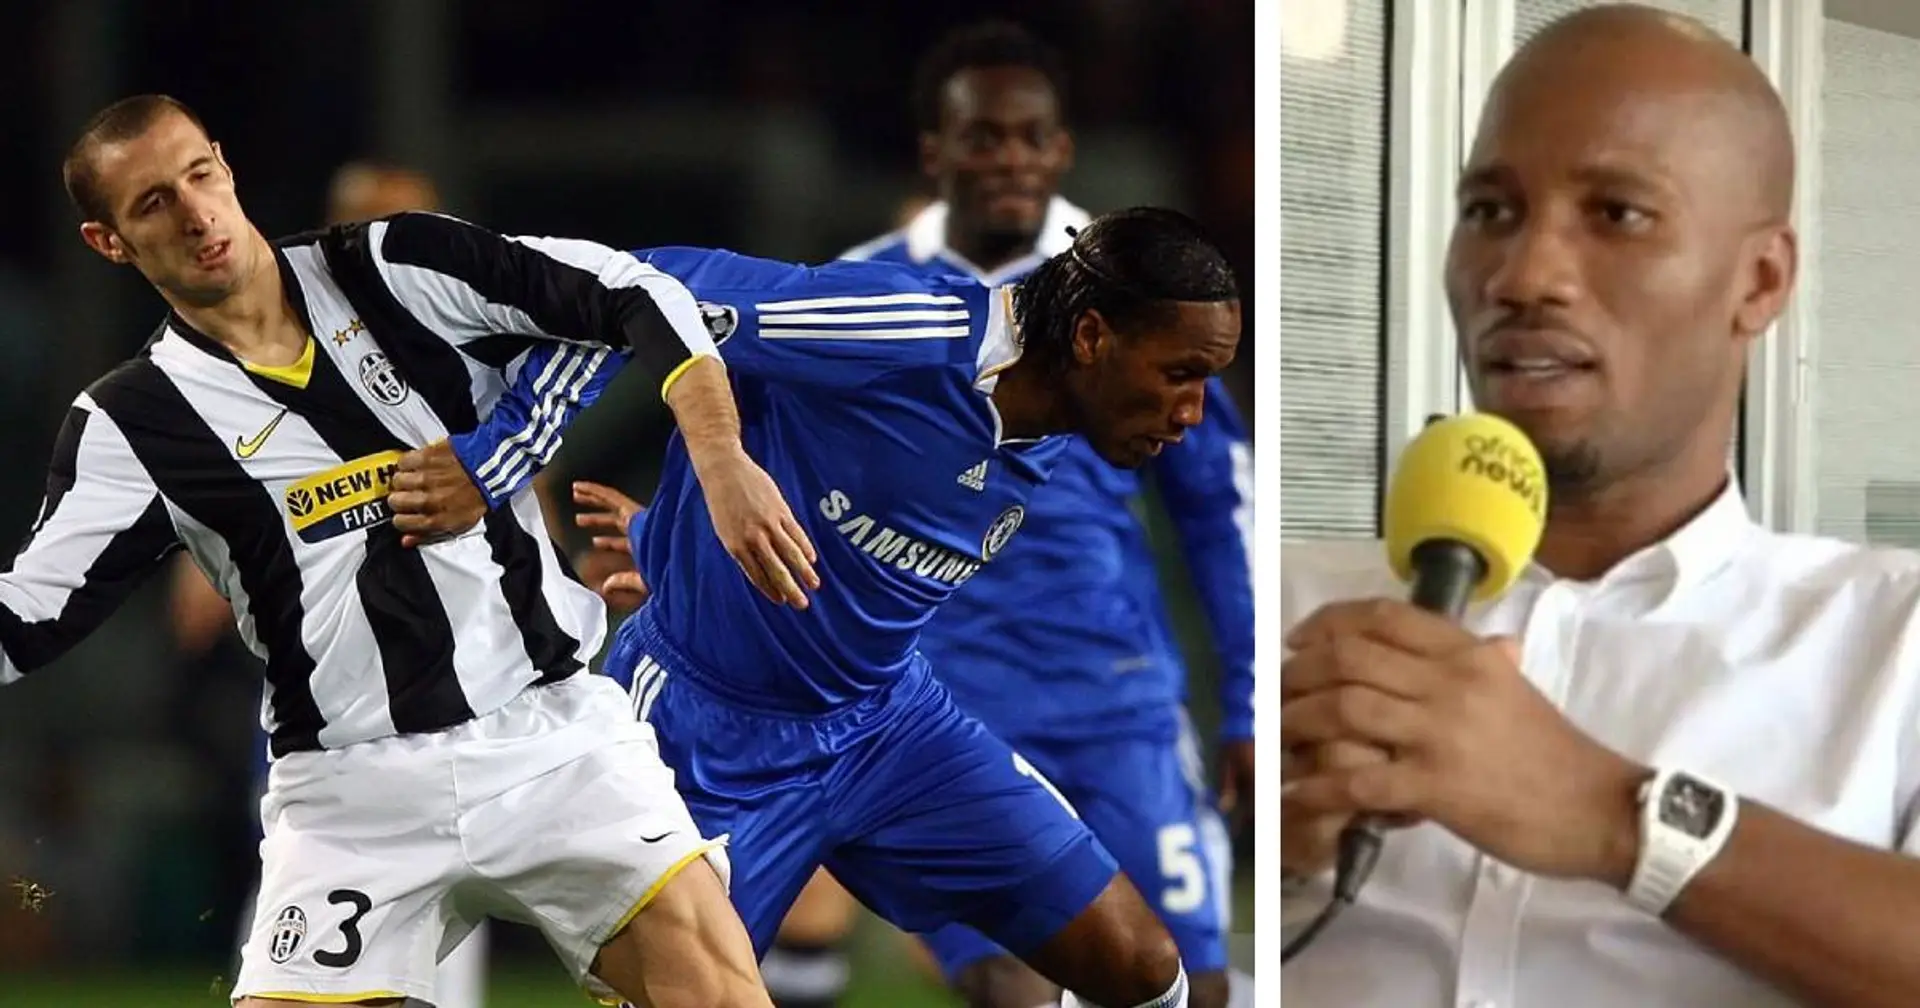 "Potevo giocare alla Juventus": Drogba svela un rimpianto della sua carriera